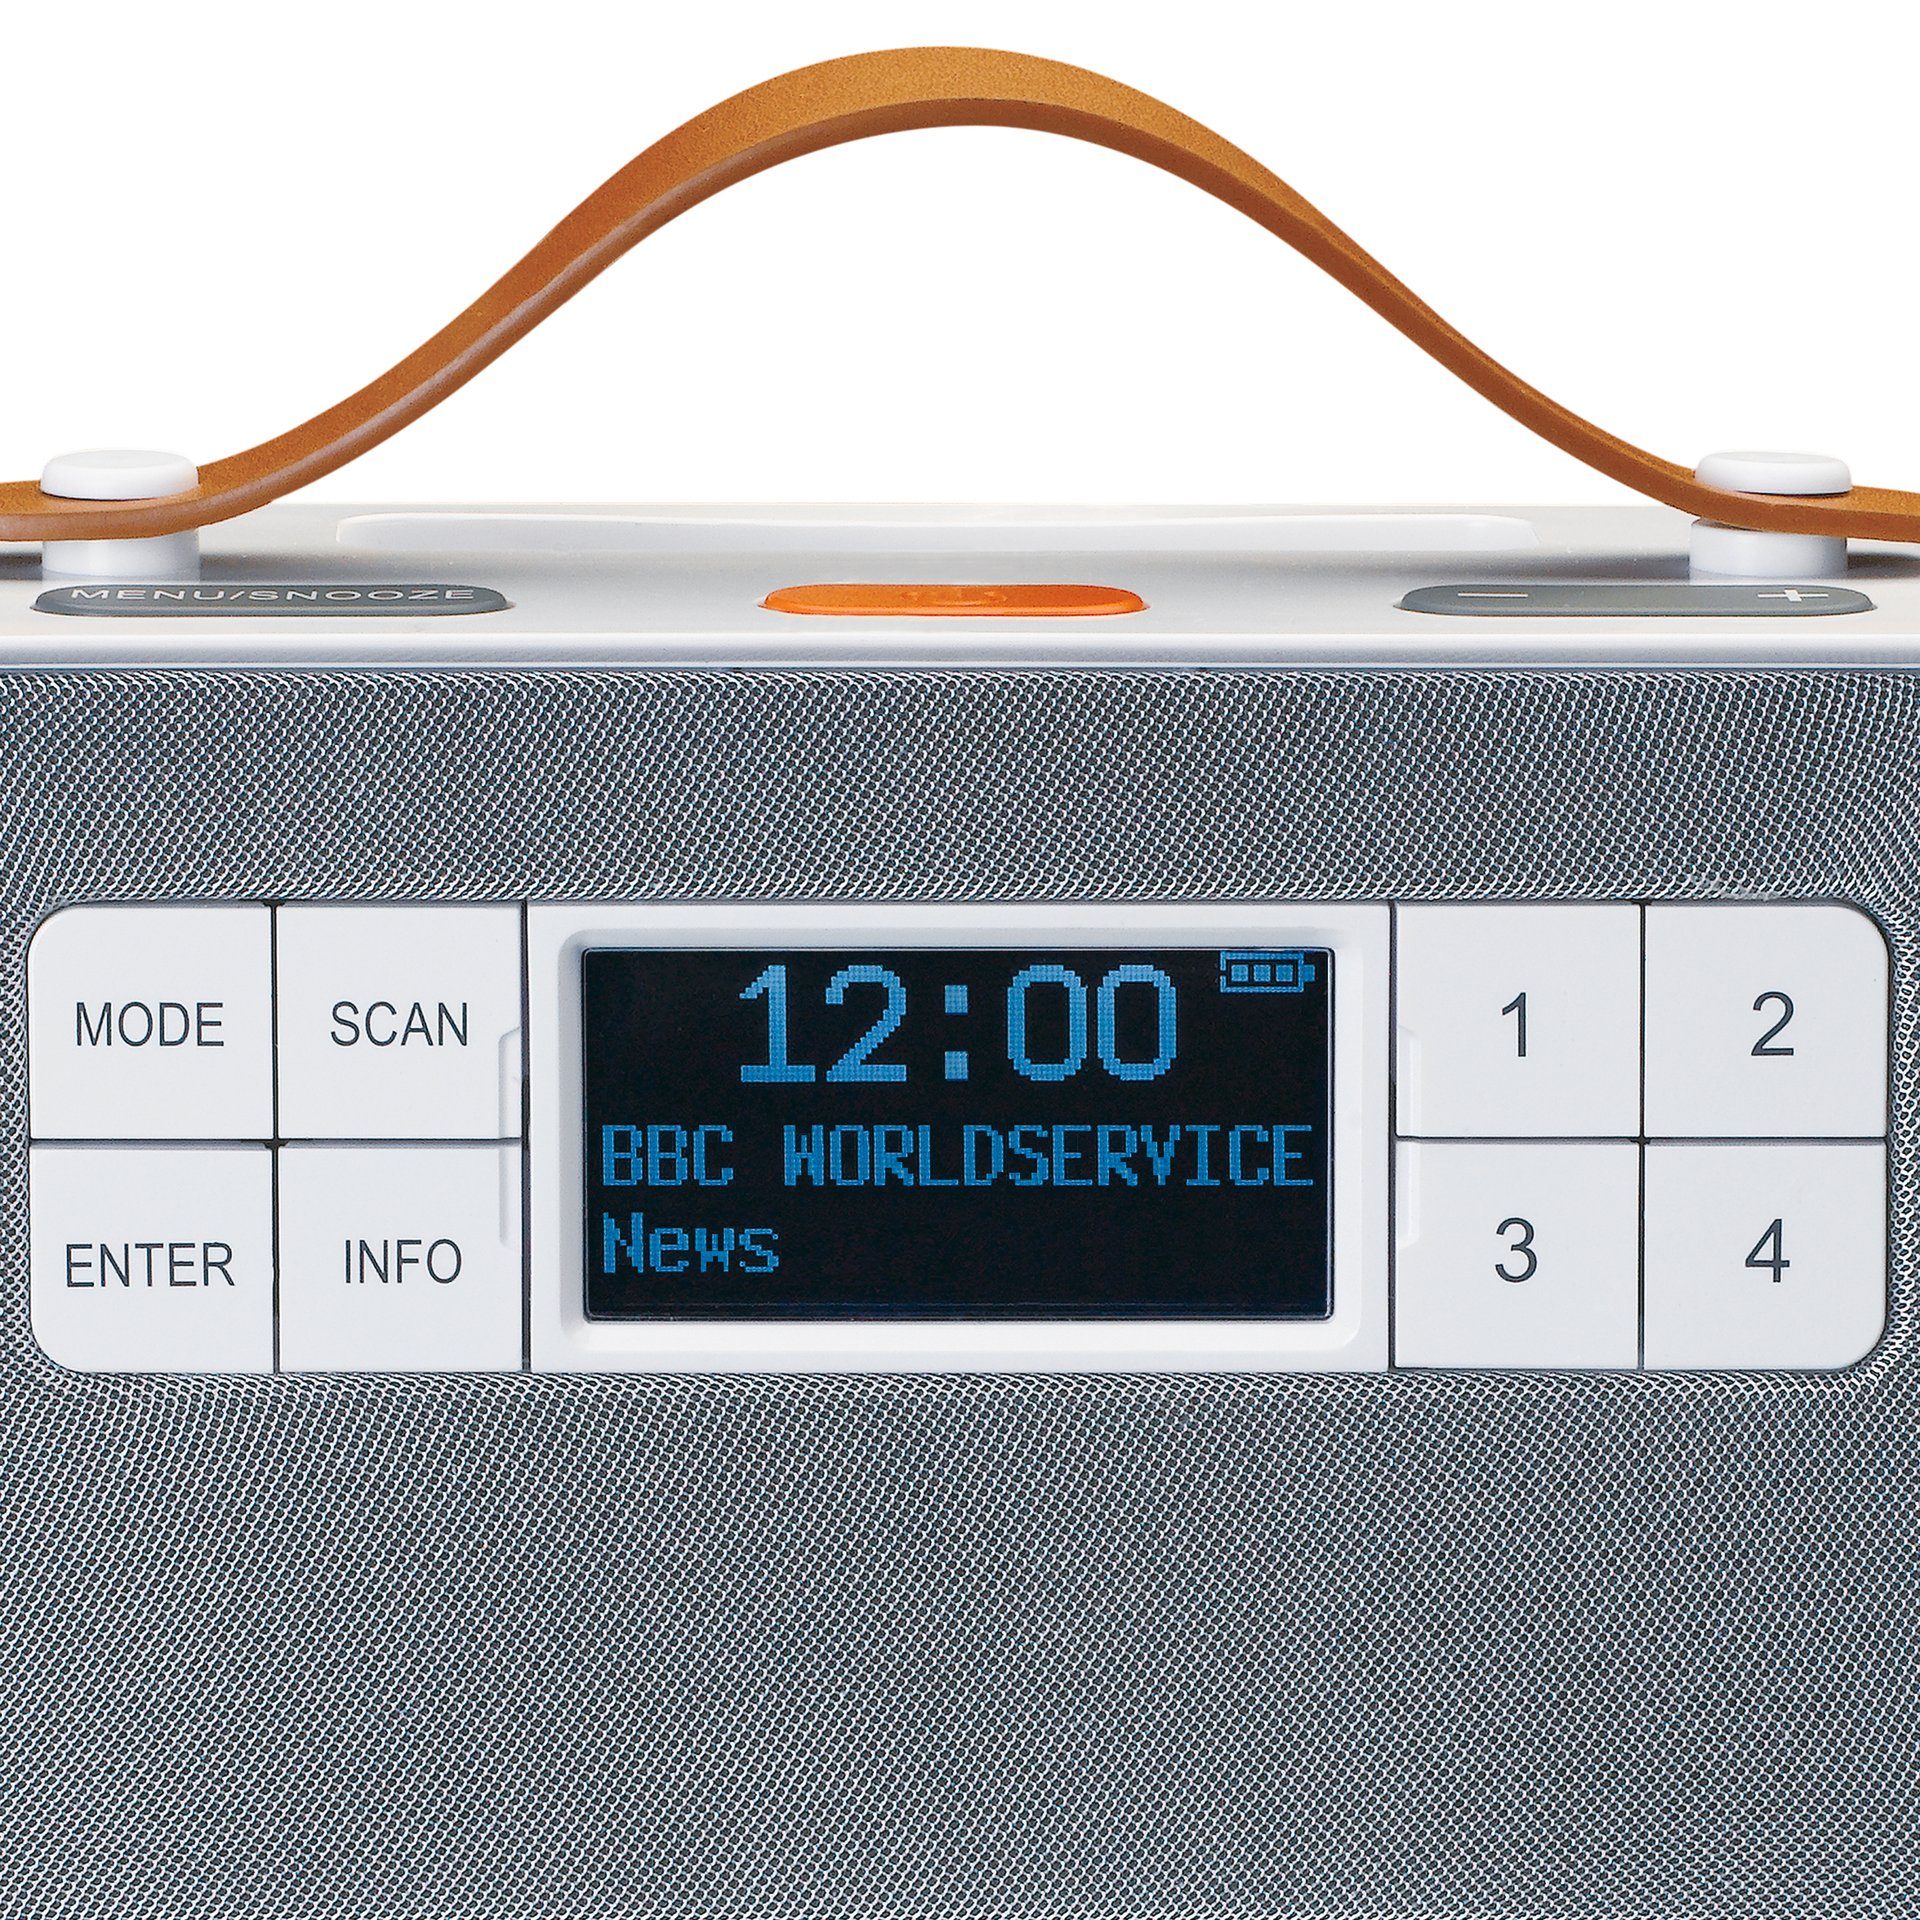 Lenco PDR-065 Digitalradio weiß (DAB)